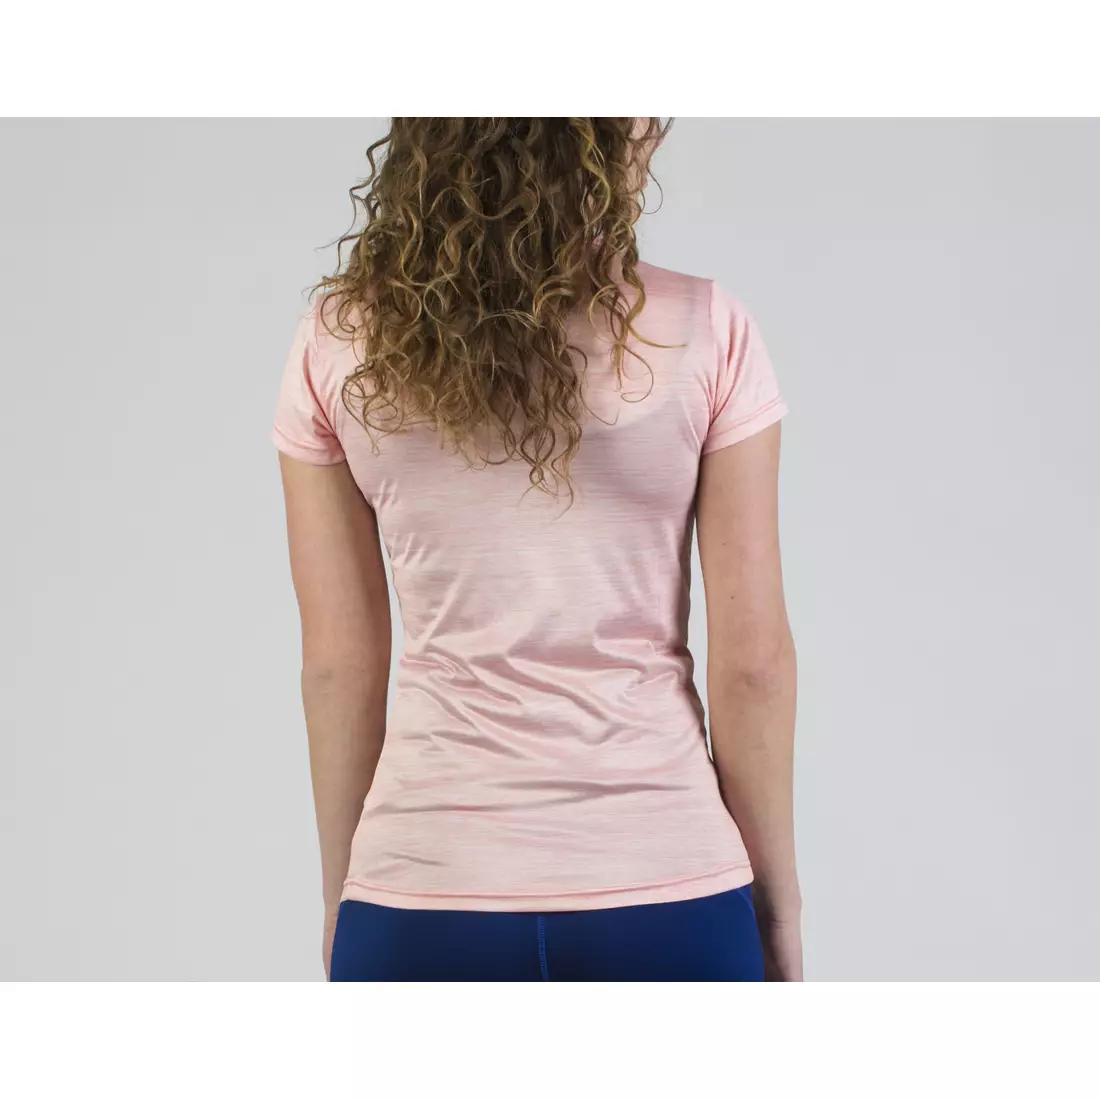 ROGELLI RUN DESIRE 840.264 - Damen kurzarm Sportshirt, Pink-Coral